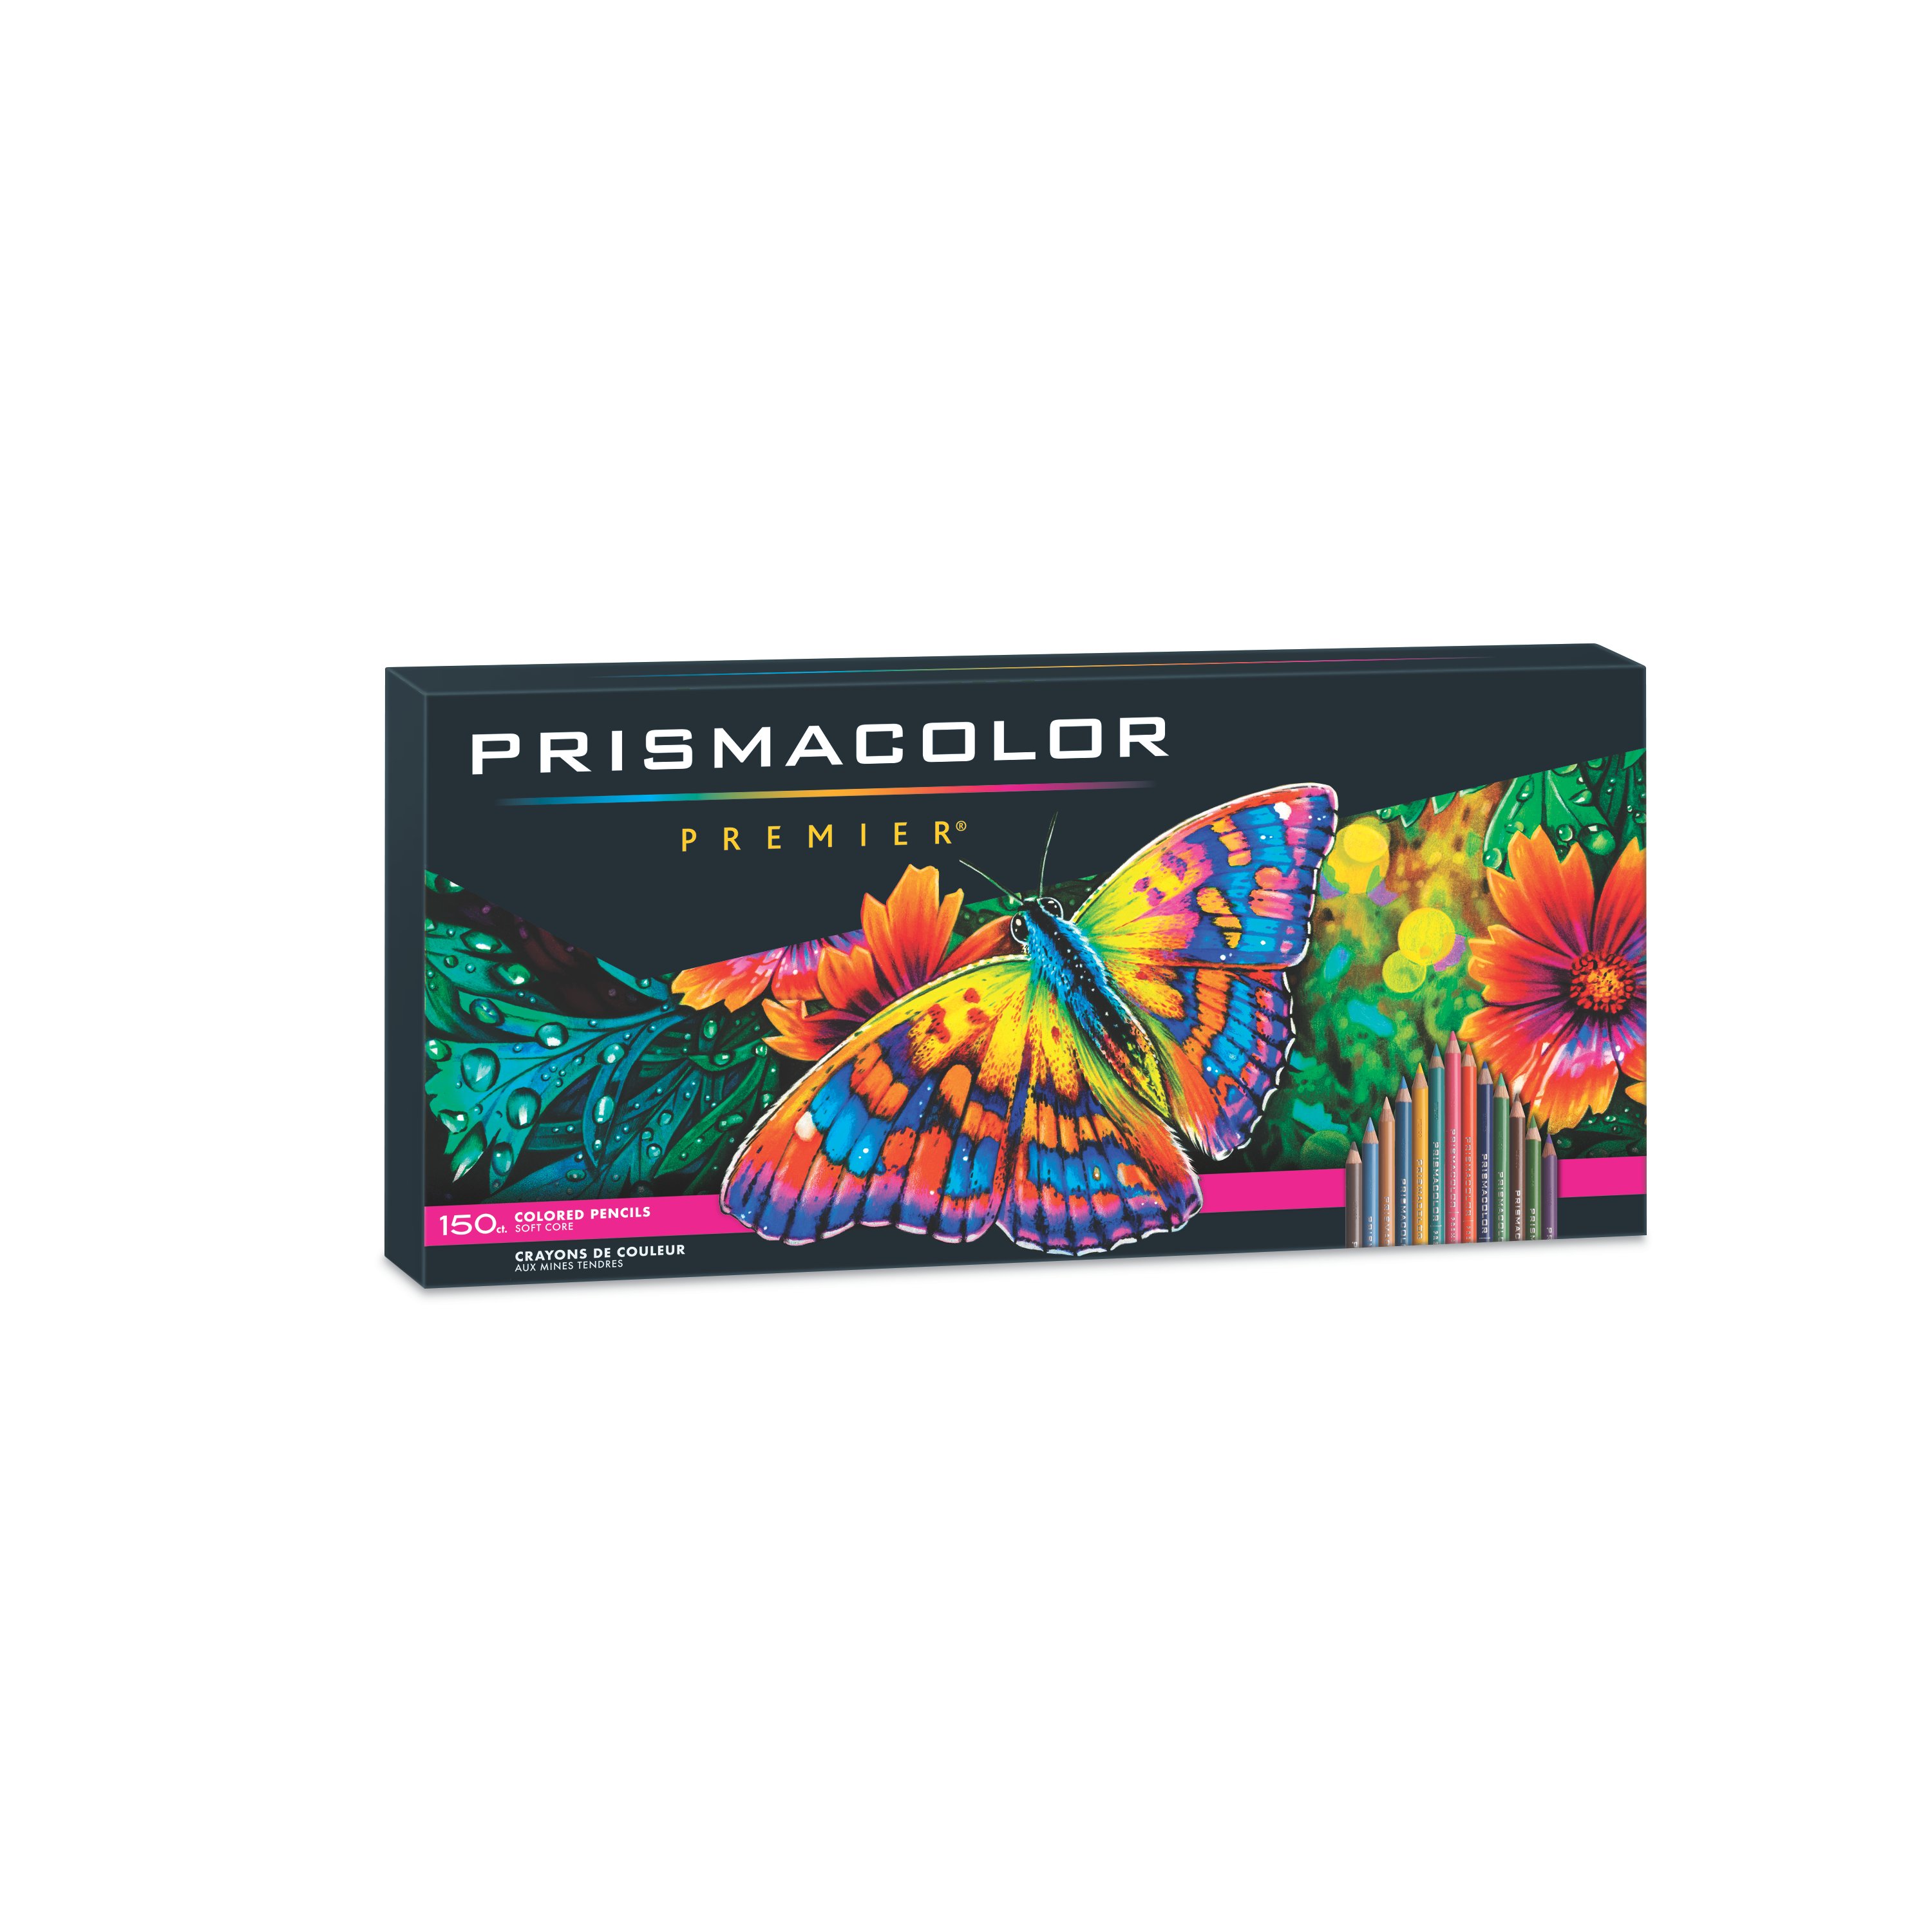 Prismacolor Premier Colored Pencils Soft Core Sets Up To 150 Colour Pack colors